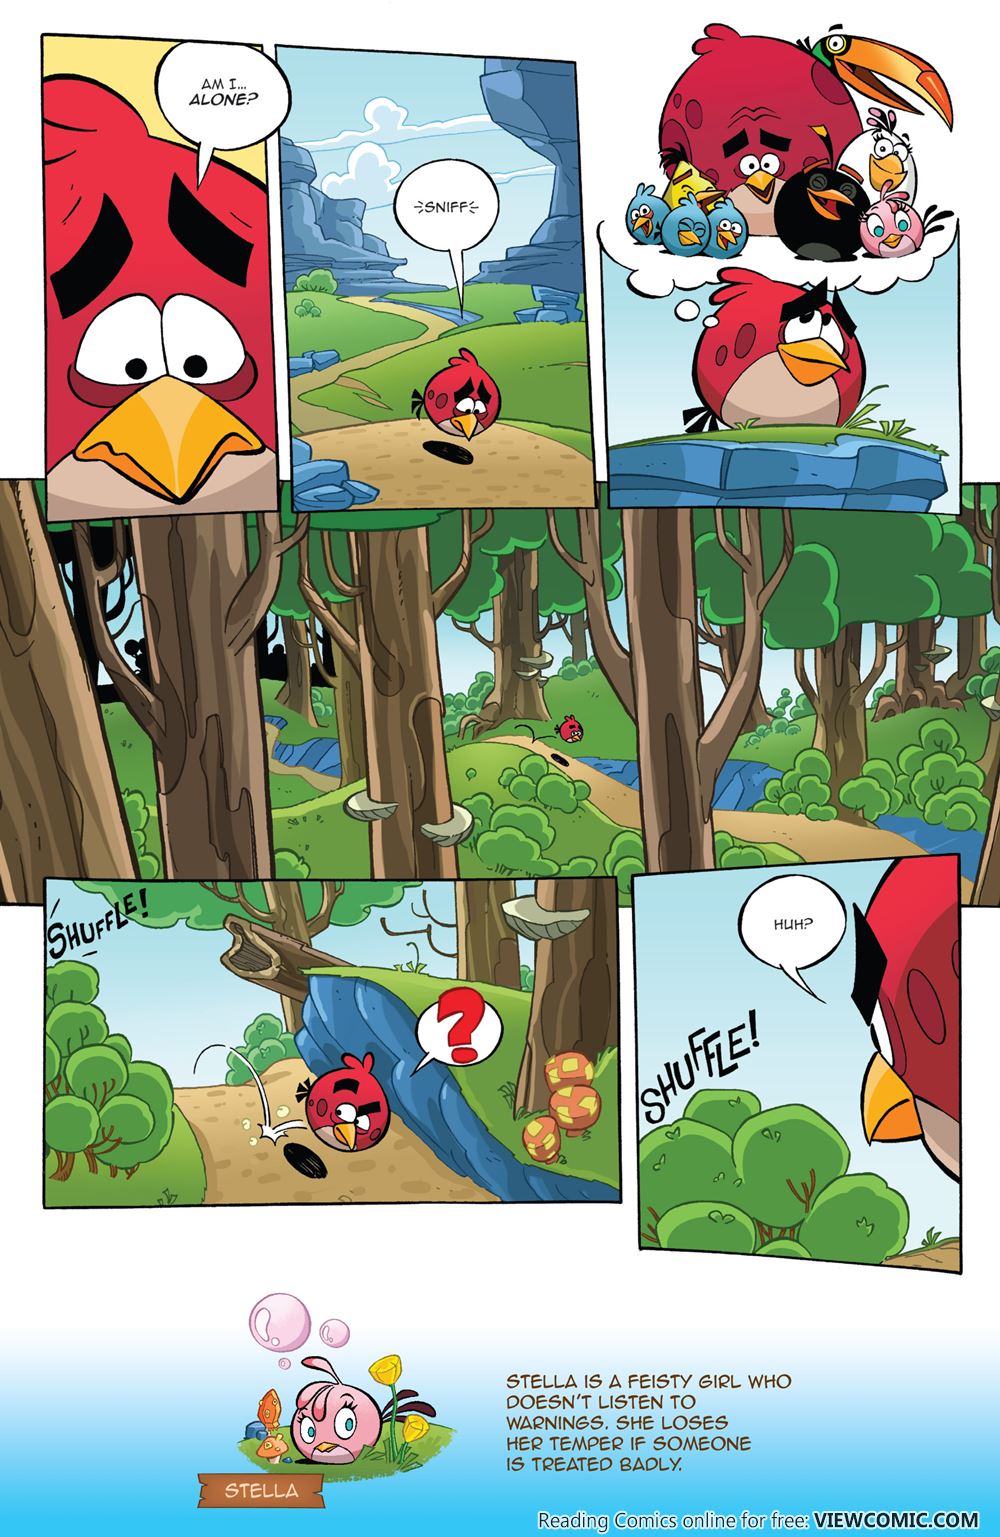 Angry Birds Comic Porn - Angry Birds Comics V2 001 2016 | Read Angry Birds Comics V2 001 2016 comic  online in high quality. Read Full Comic online for free - Read comics  online in high quality .| READ COMIC ONLINE